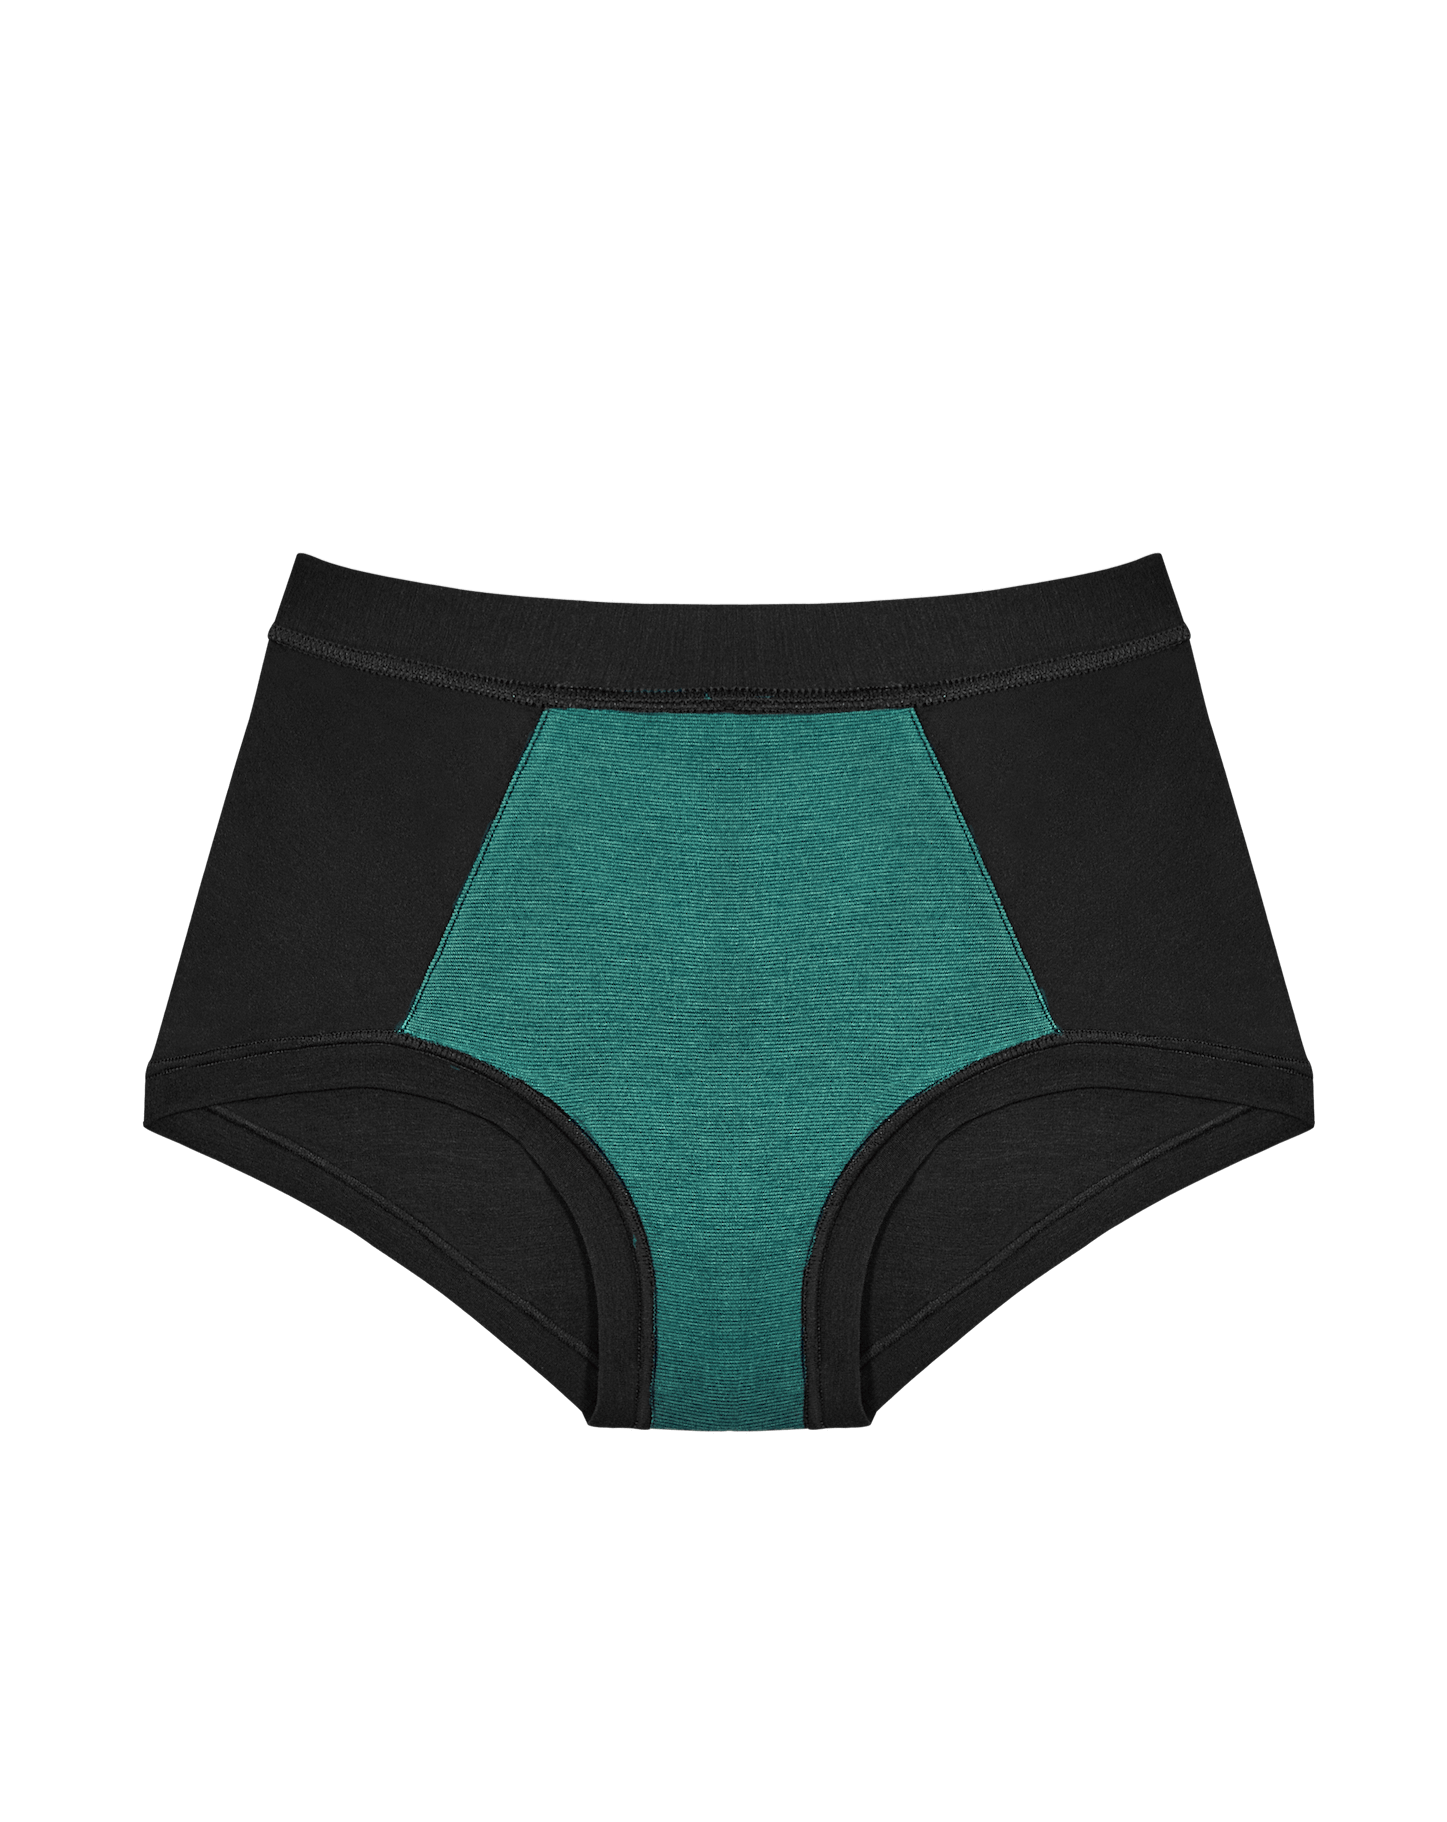 Undergarments – Hannah's of Erin